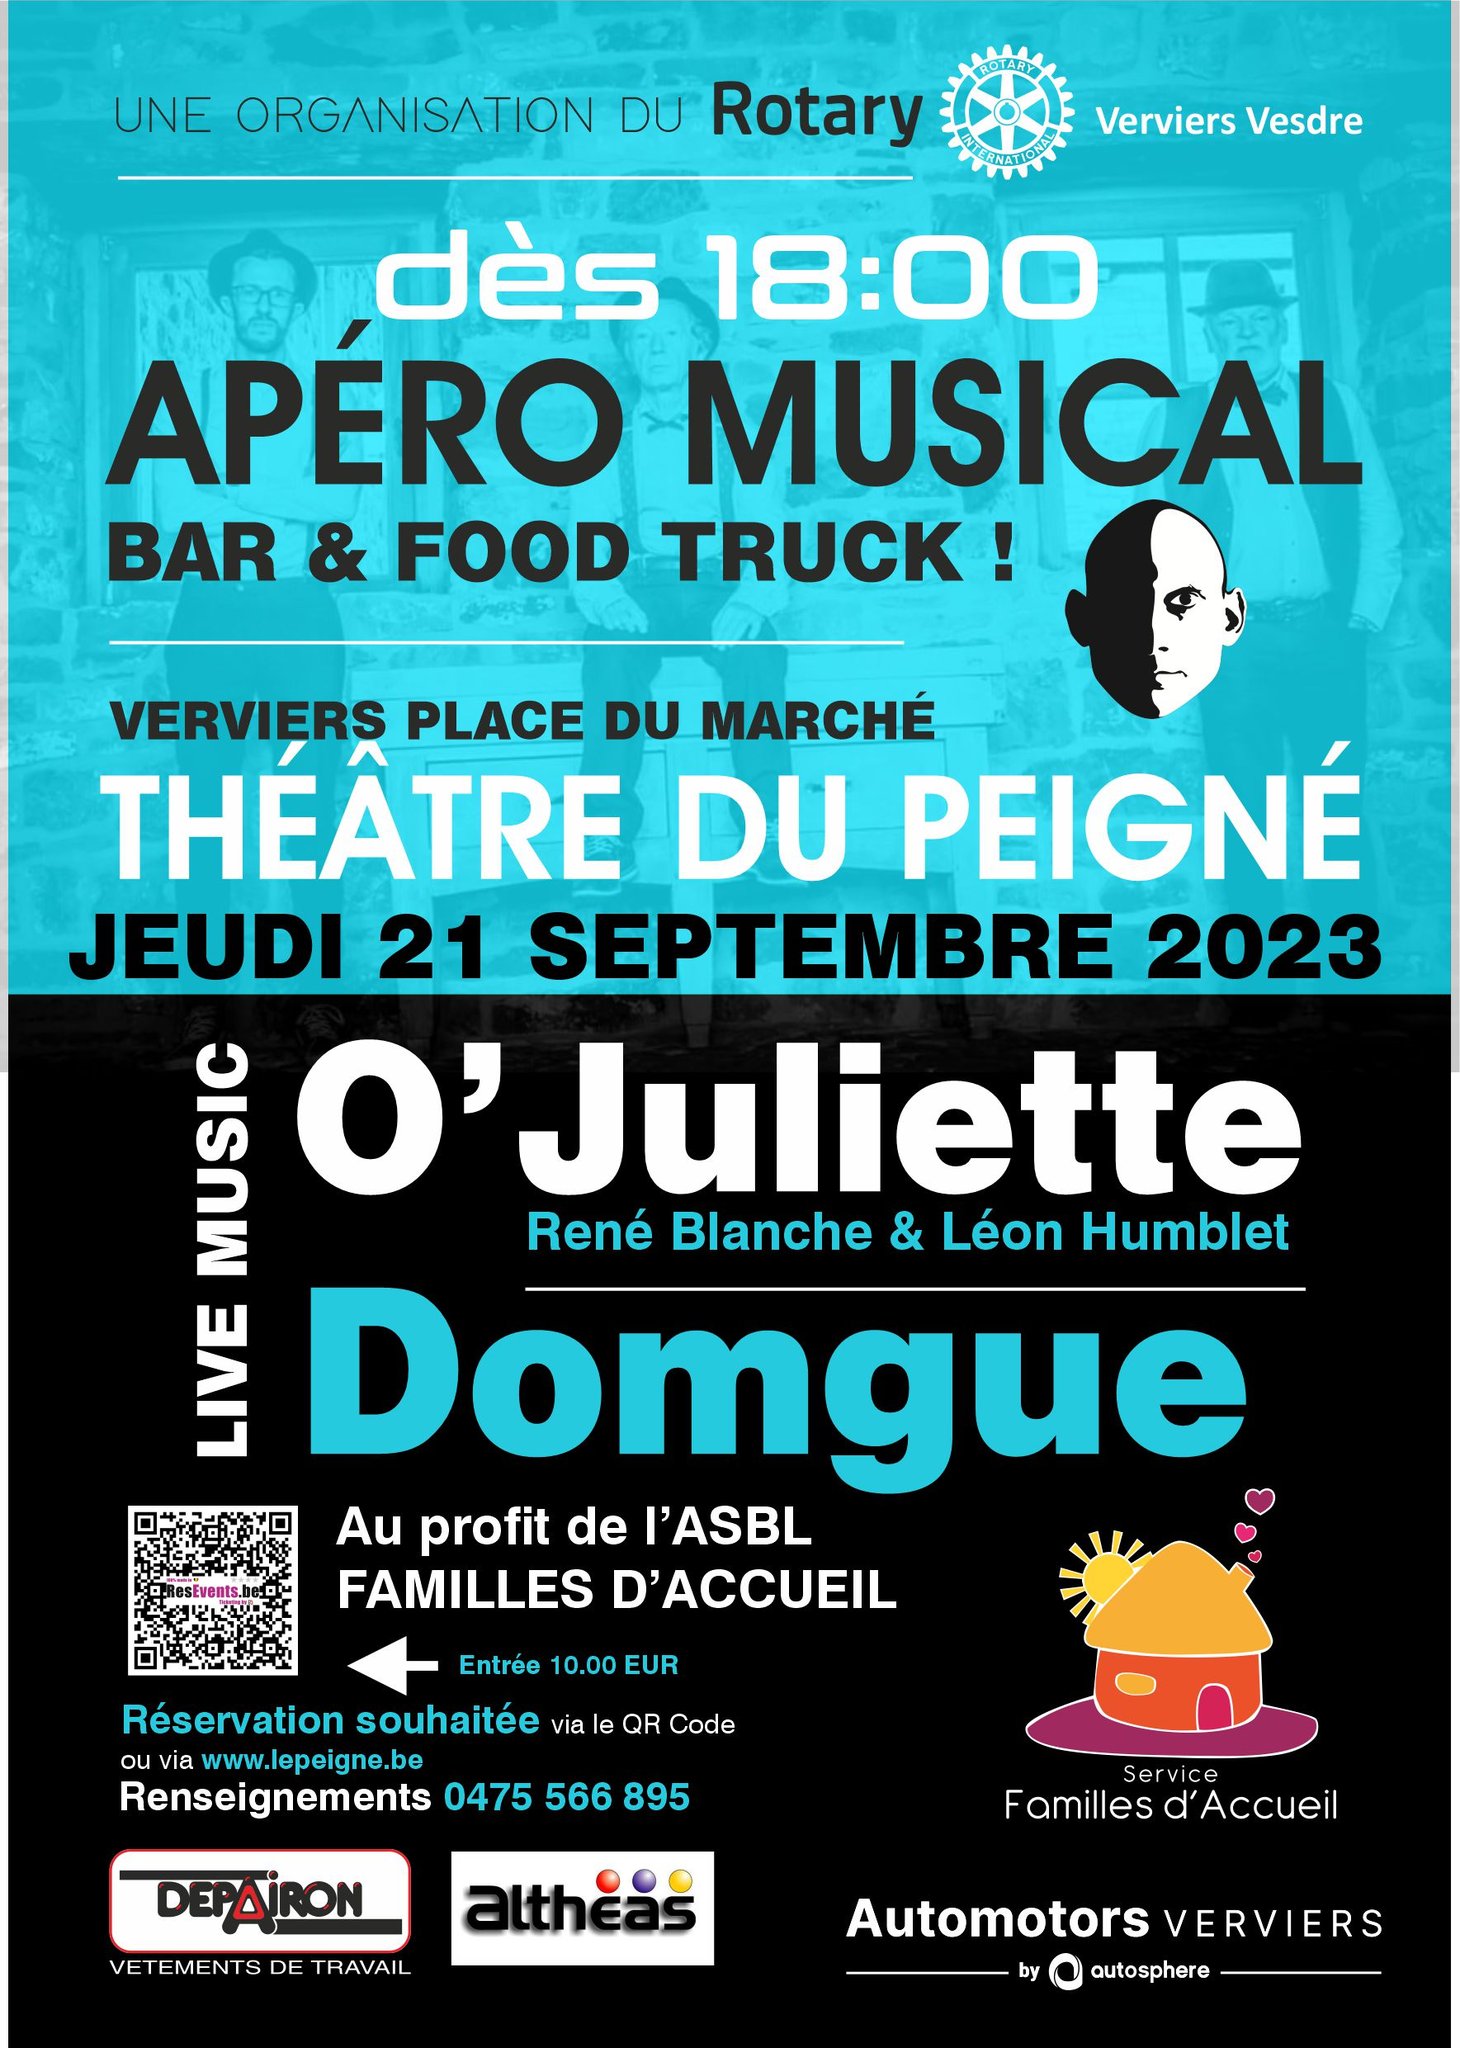 Apéro Musical - Bar & Food Truck au Théâtre du Peigné de VERVIERS